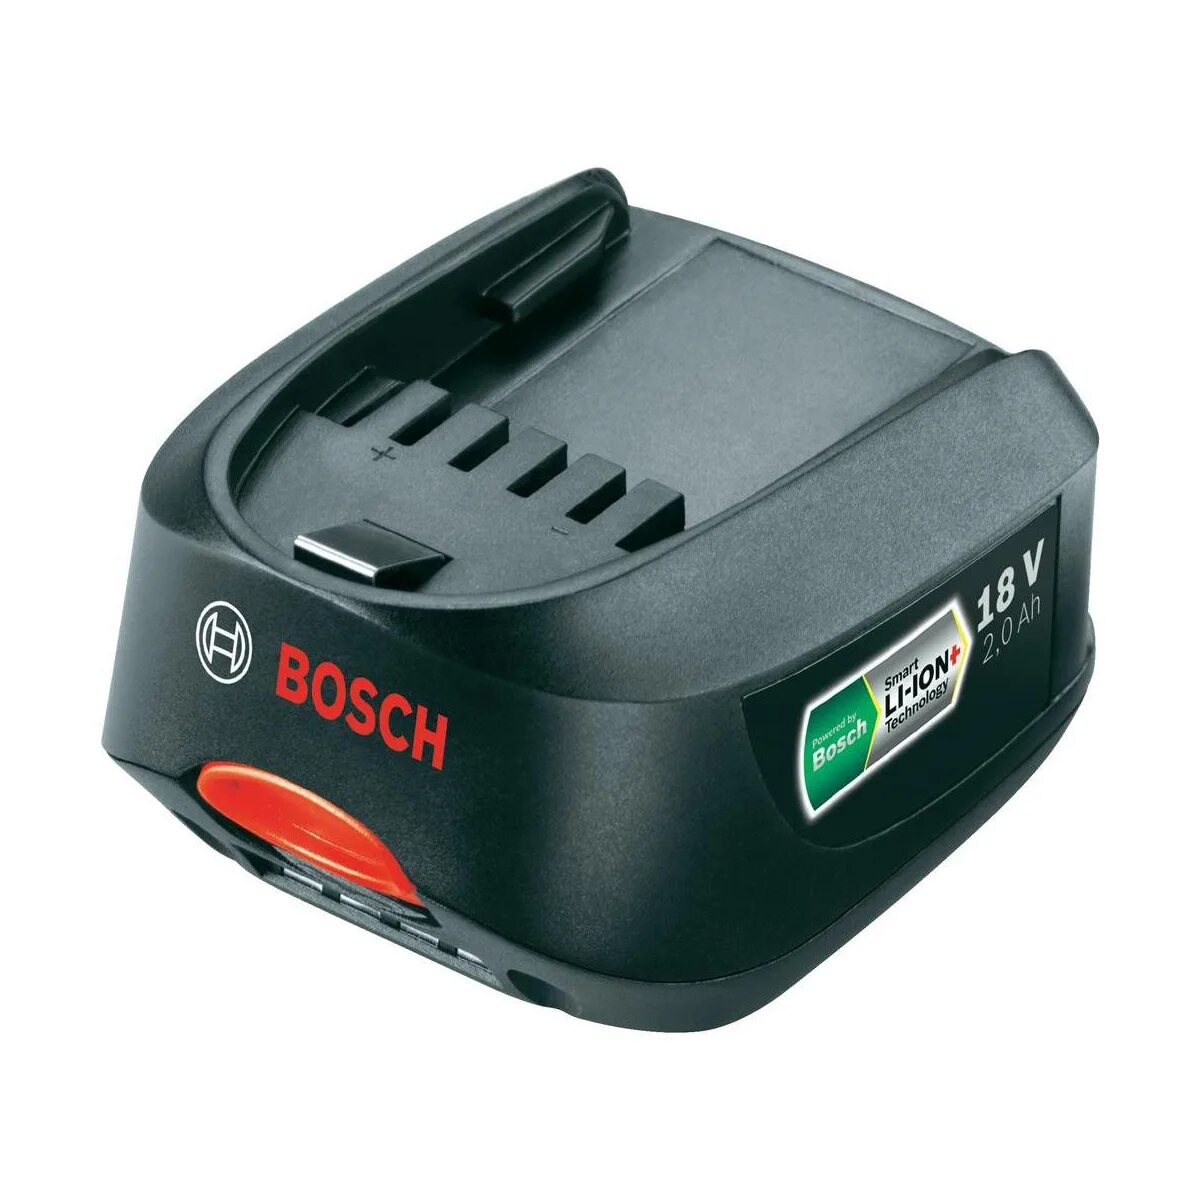 Battery 18. Аккумулятор Bosch 18v 1.5 Ah. Аккумулятор Bosch 18v 2.0Ah li-ion. Аккумулятор Bosch 18v 2.0Ah. Аккумулятор Bosch 18v 1.5Ah li-ion.